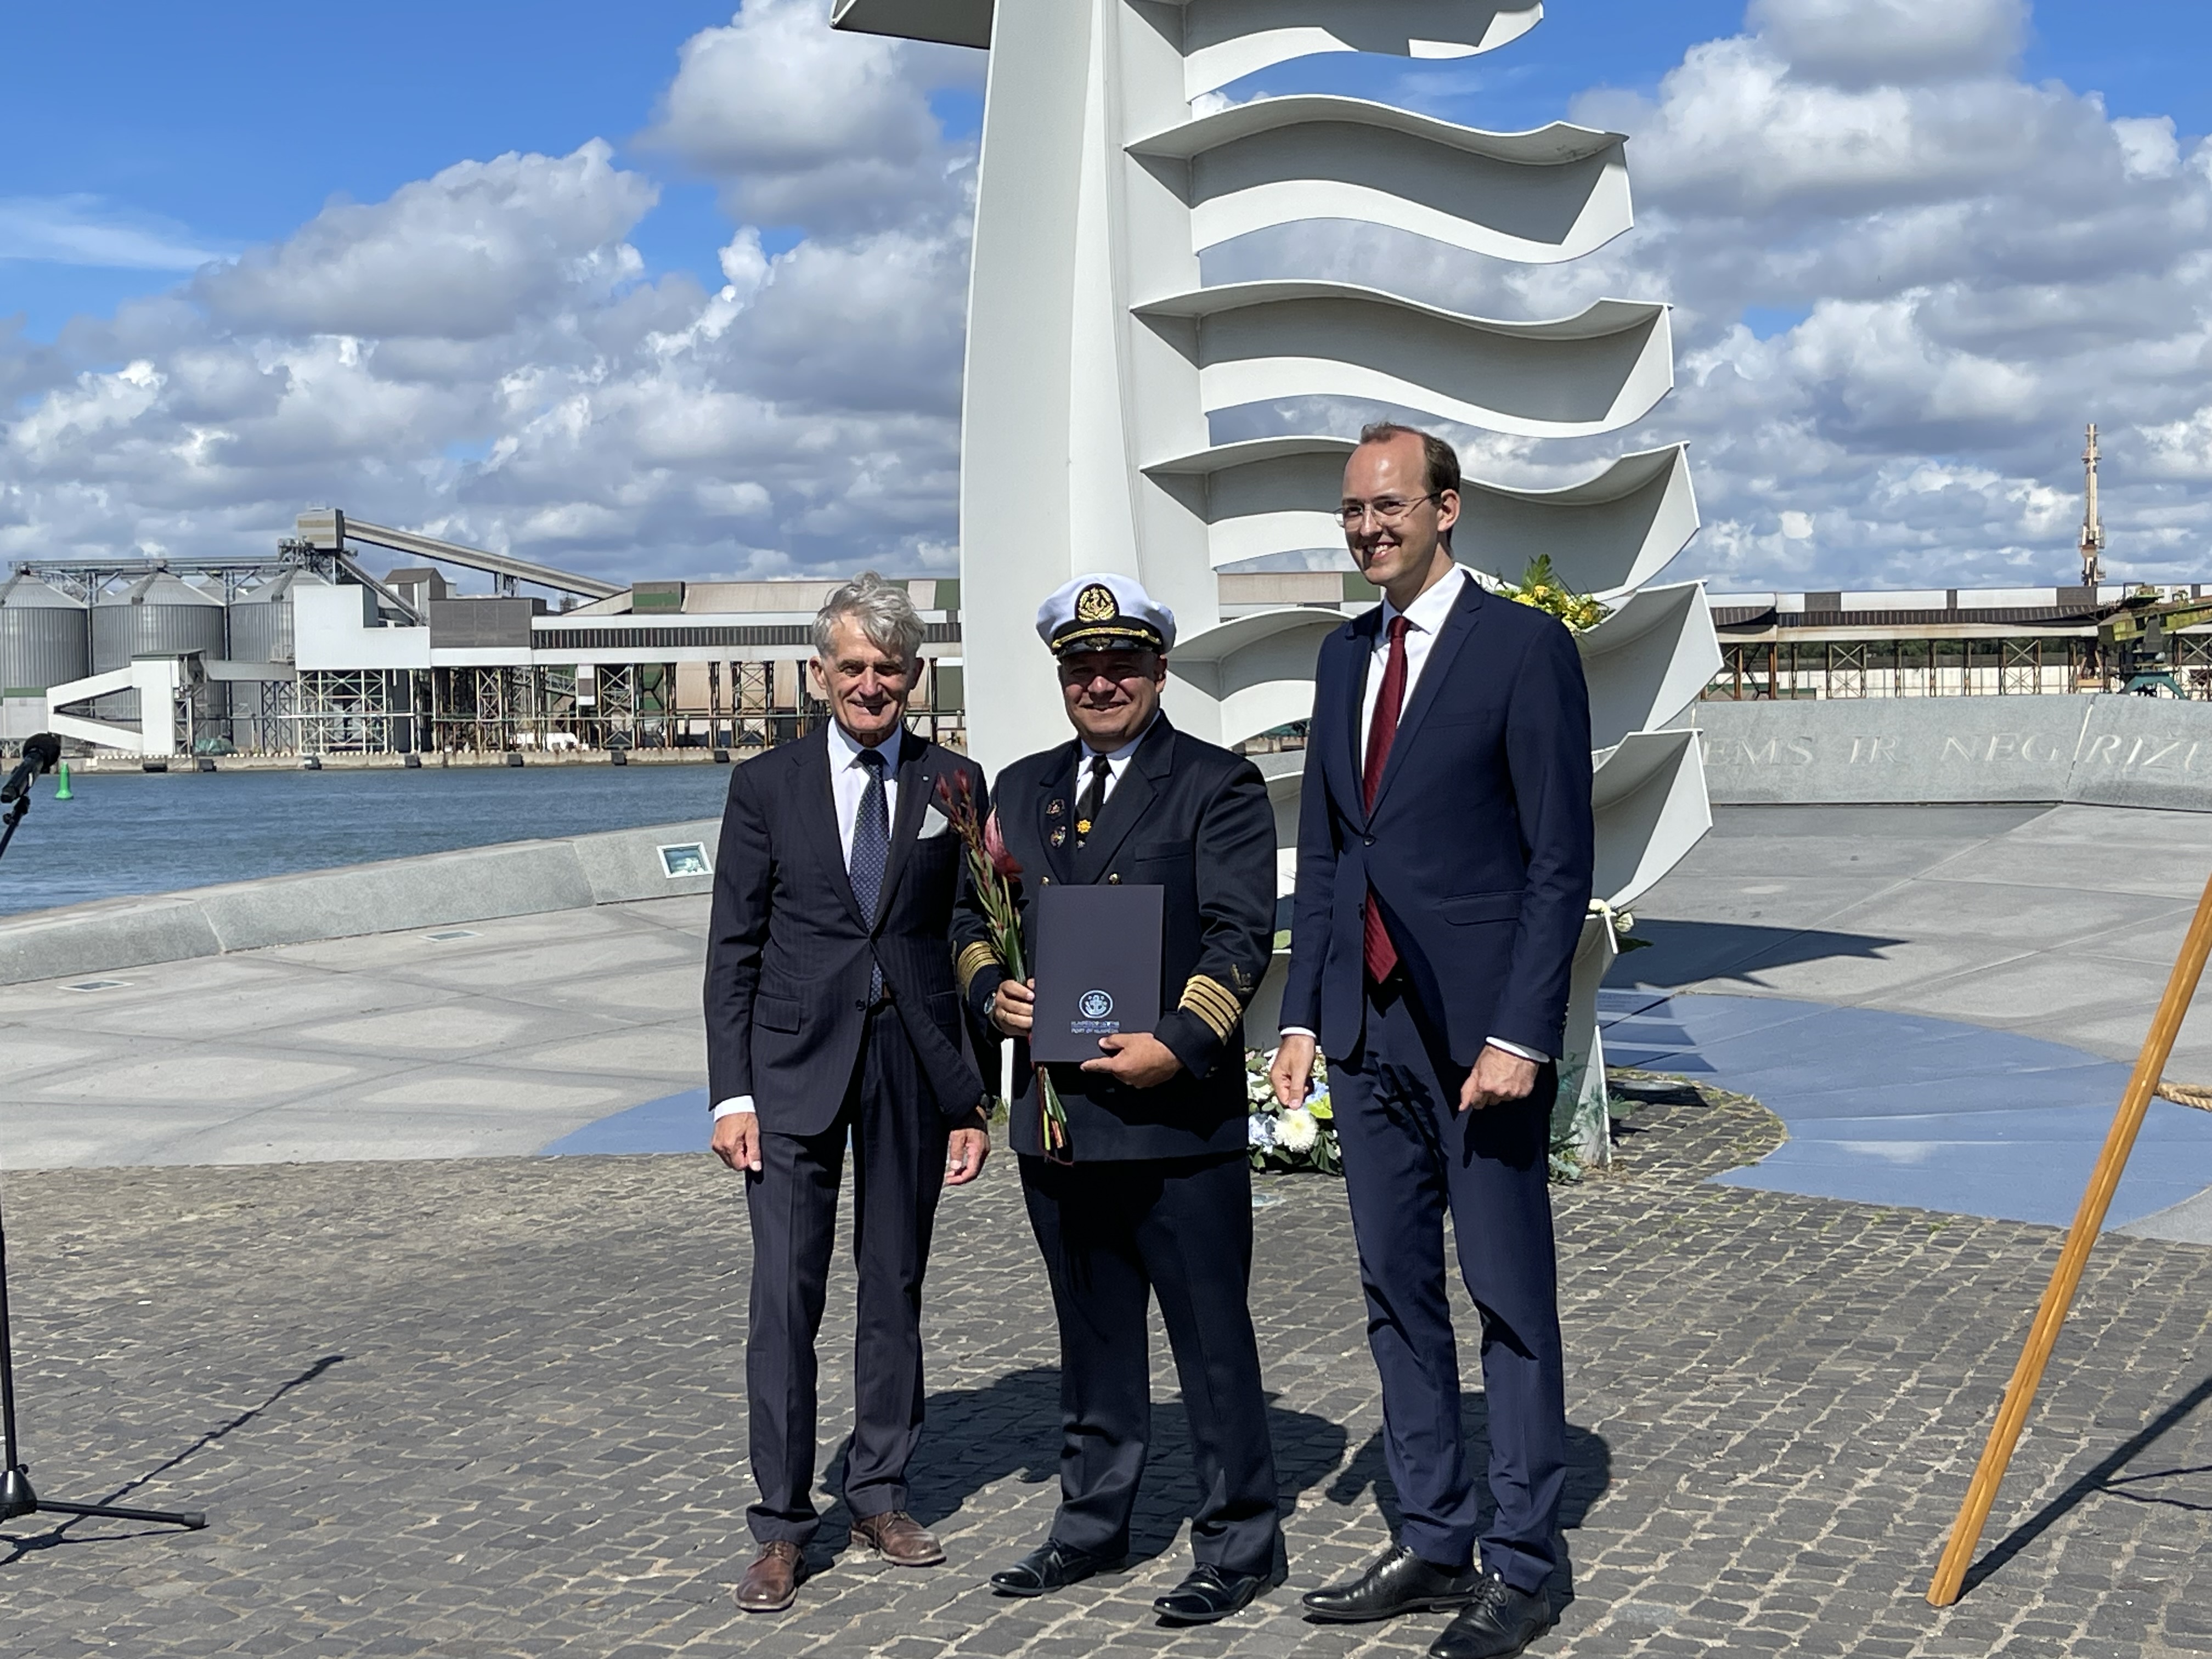 Pasitinkant Jūros šventę pagarba jūrą Lietuvai atvėrusiems ir uosto bendruomenei | Klaipėdos valstybinio jūrų uosto direkcijos nuotr.